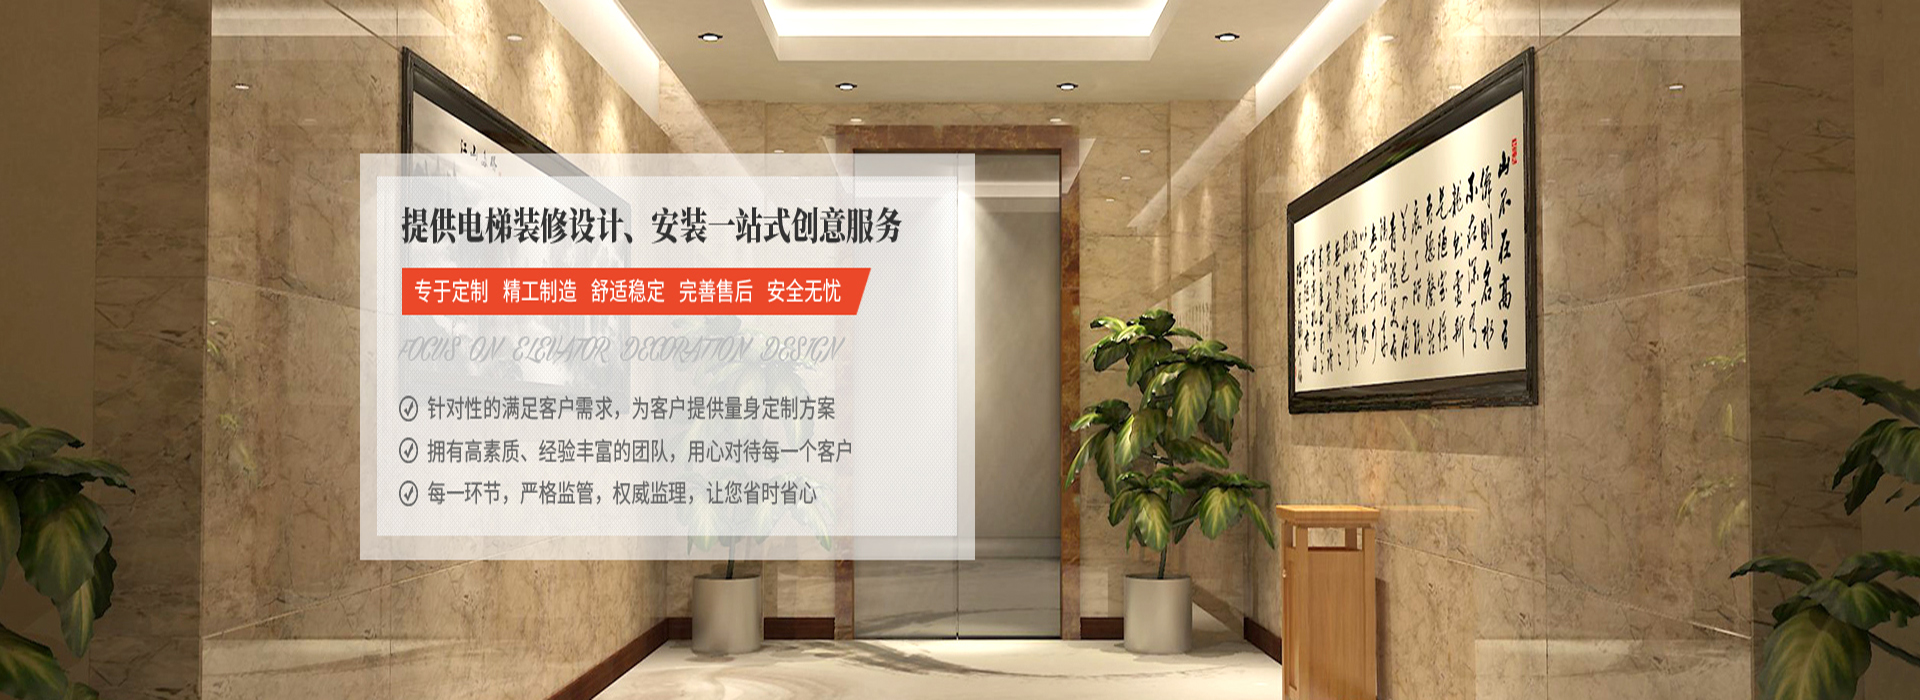 惠州电梯安装